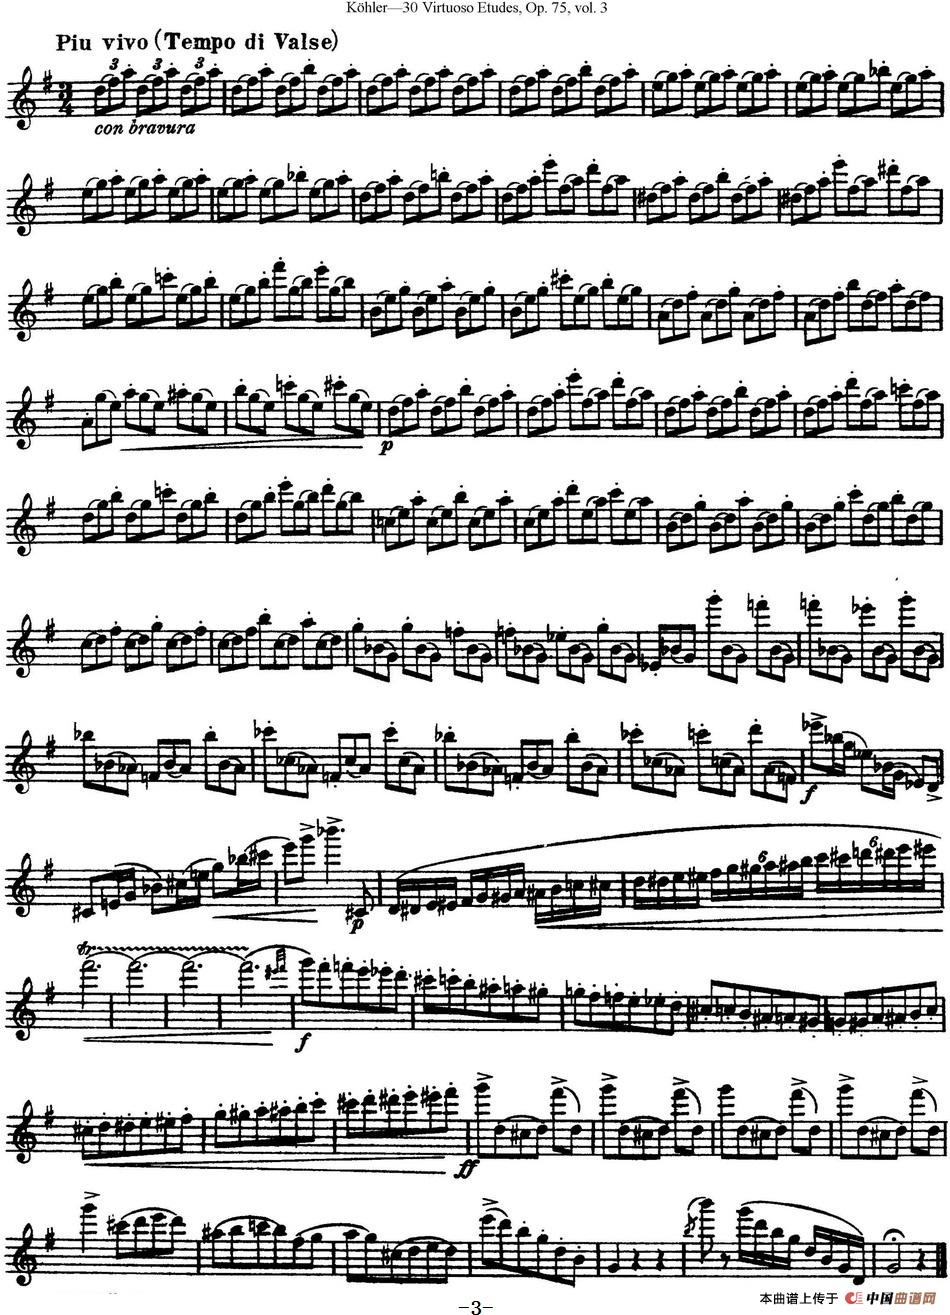 柯勒30首高级长笛练习曲作品75号（NO.30）